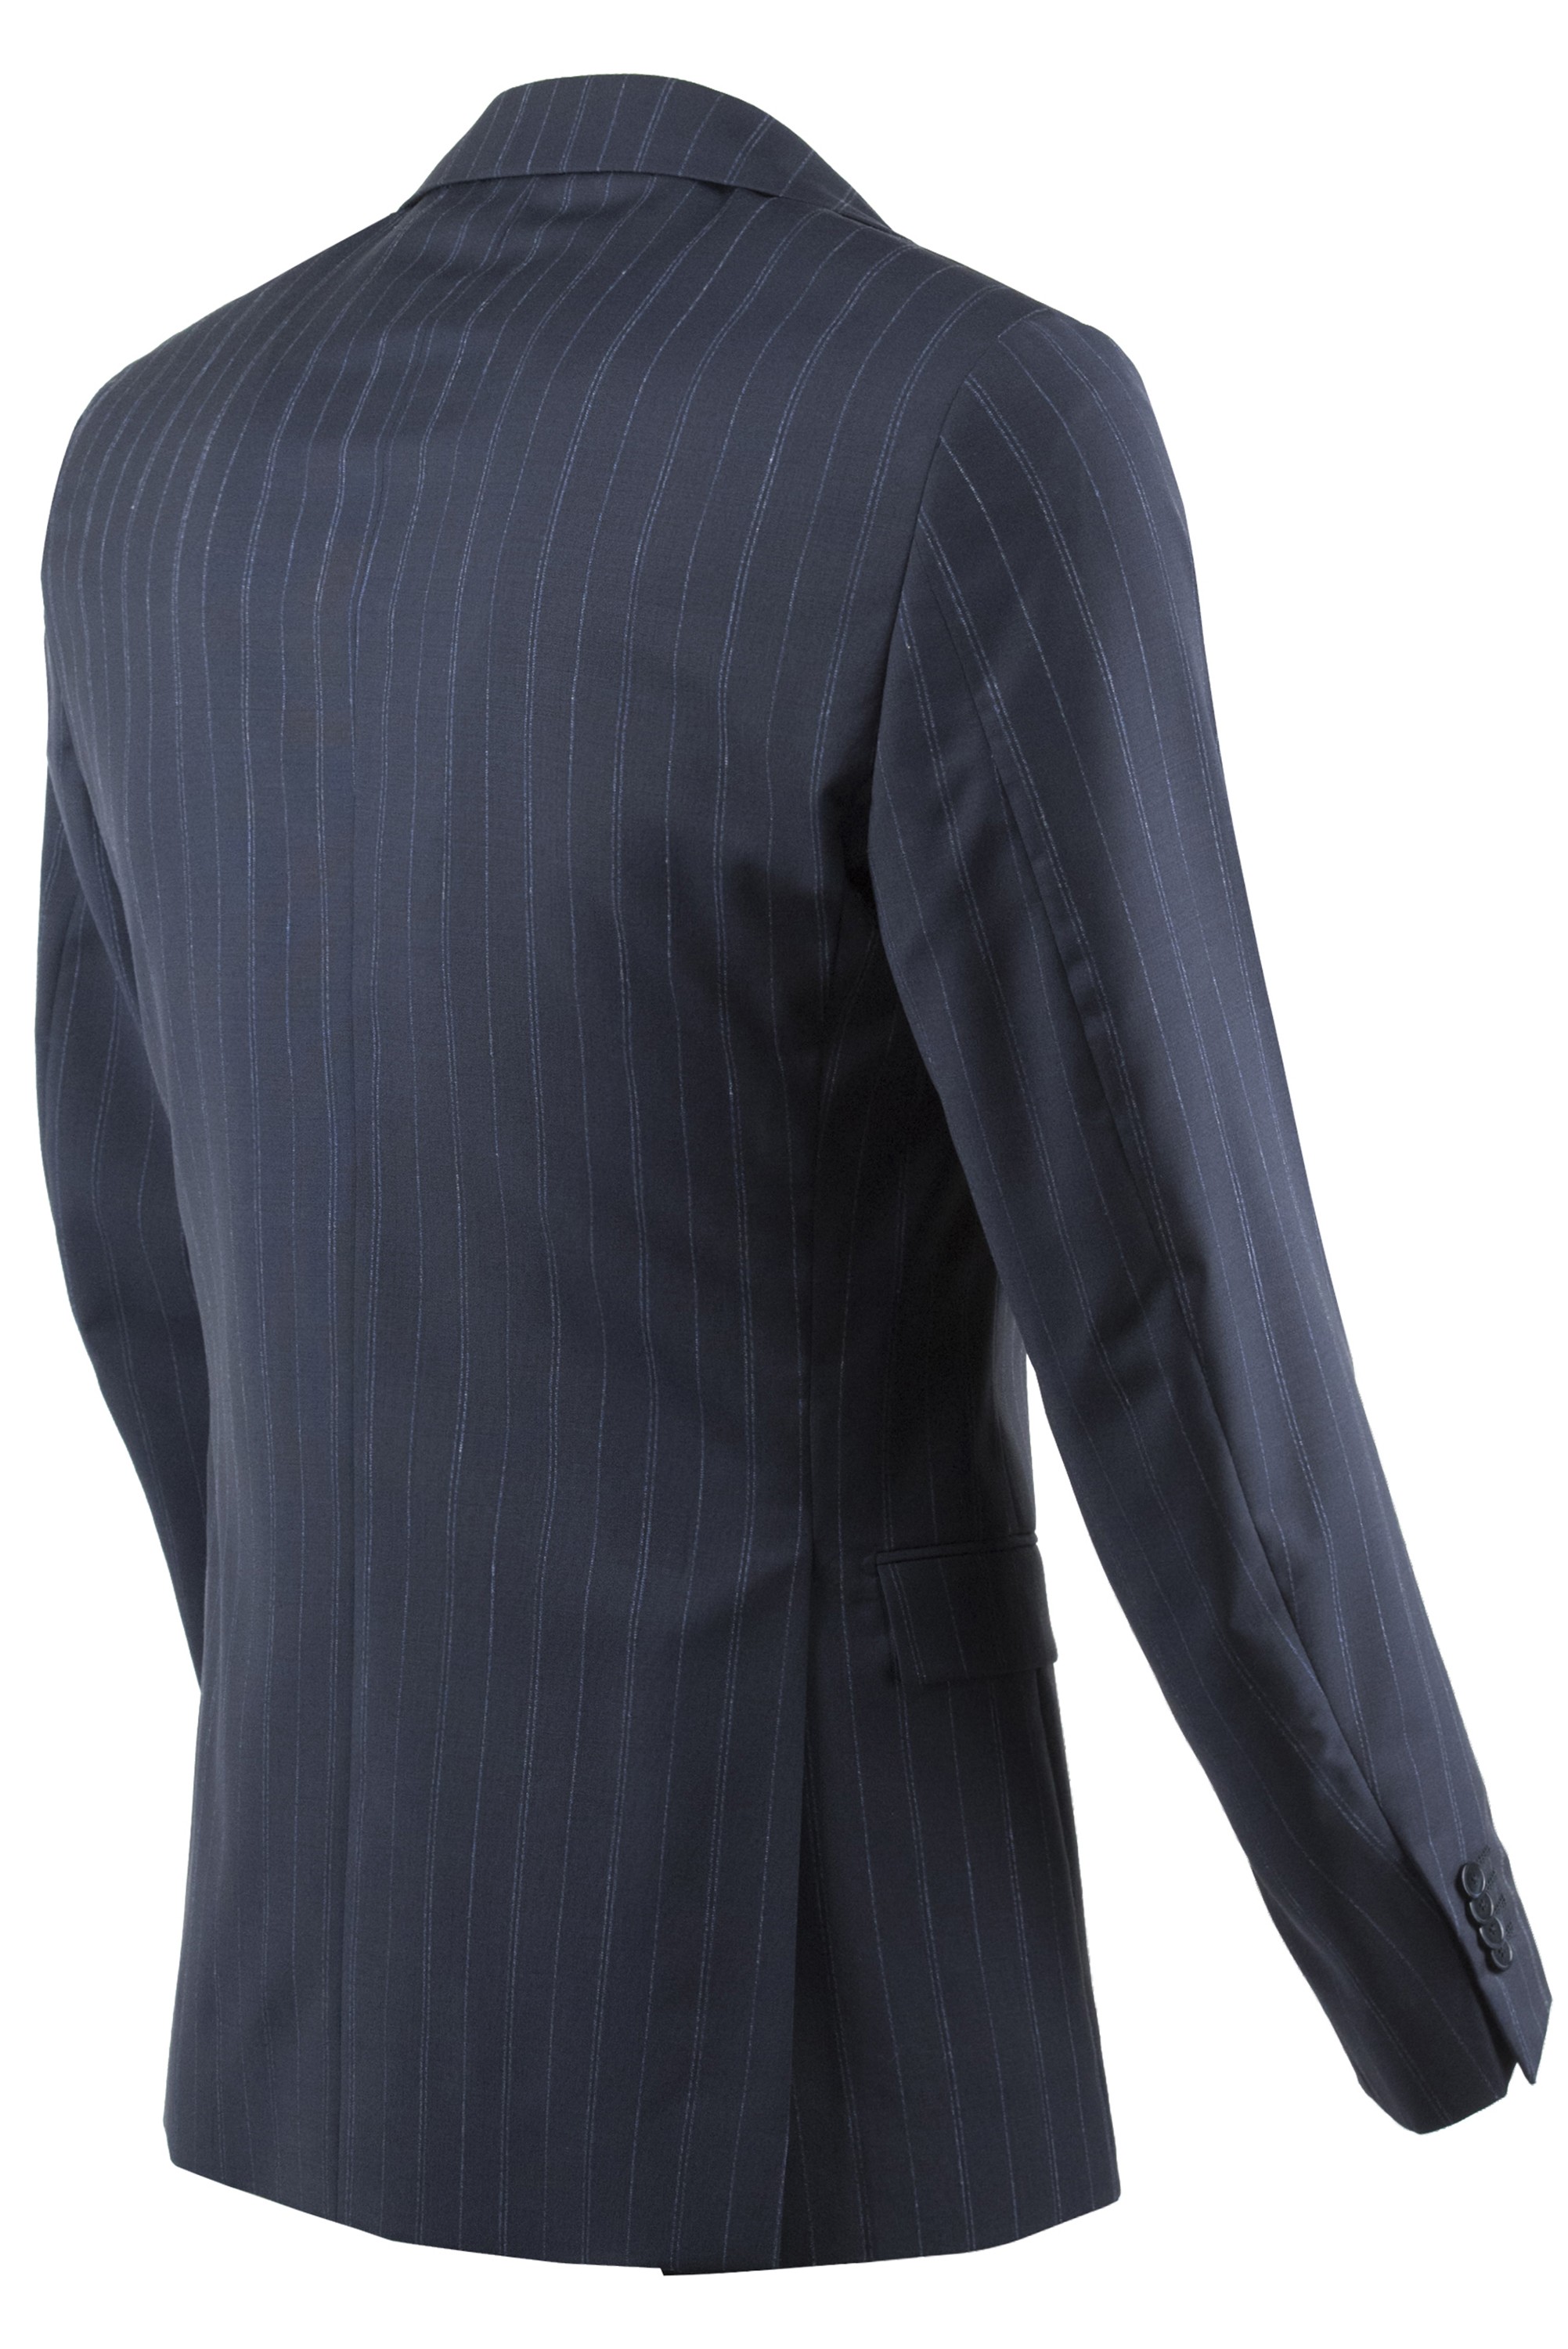 Paoloni Men's Suit 2811A448 201032 89